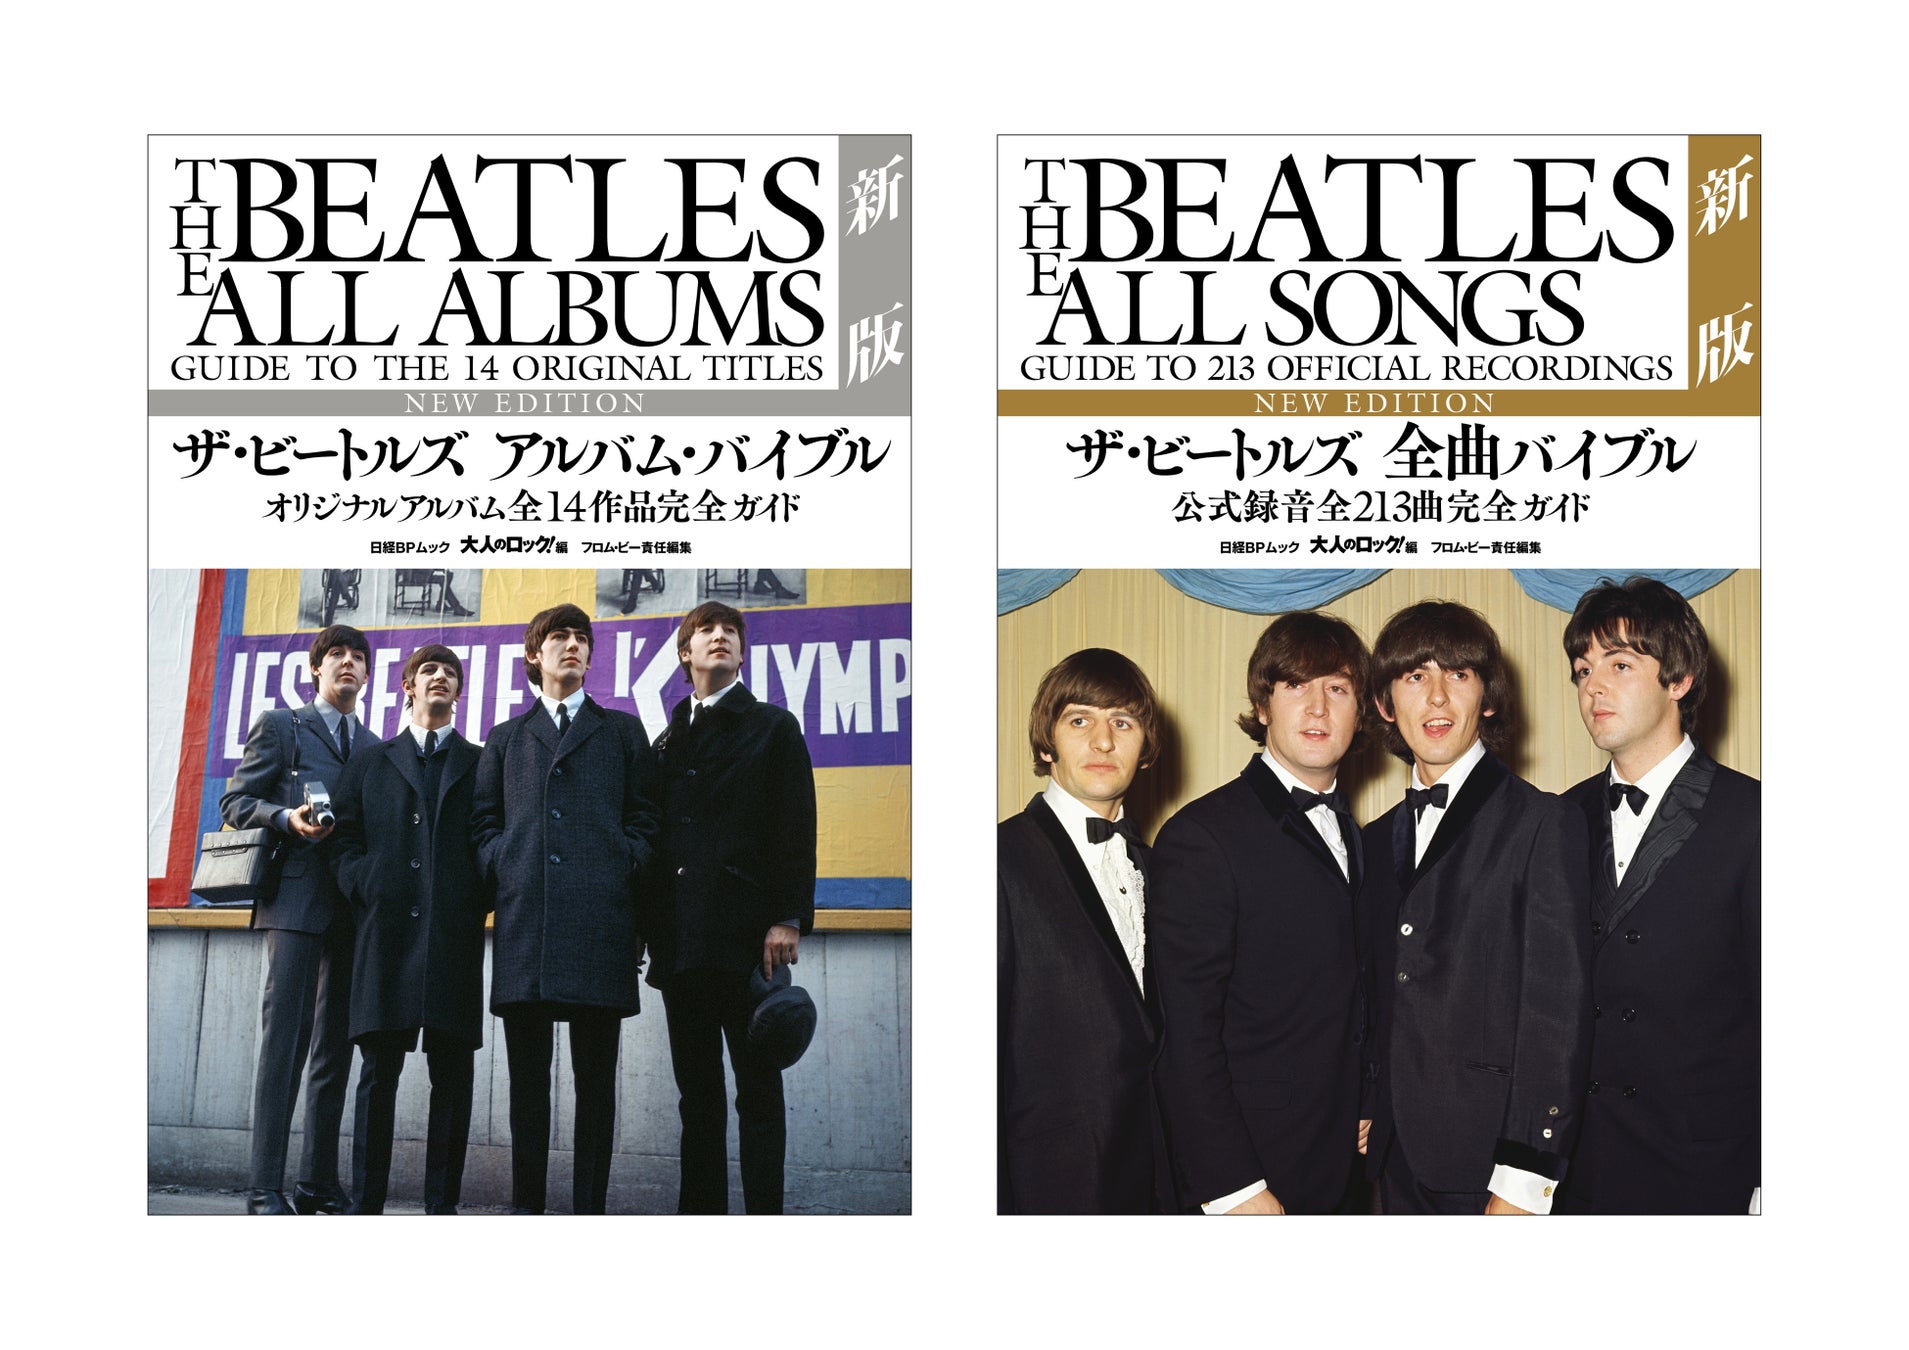 『ザ・ビートルズ 全曲バイブル』『ザ・ビートルズ アルバム・バイブル』を全面刷新。「世界デビュー60周年記念保存版」の新版として発売決定